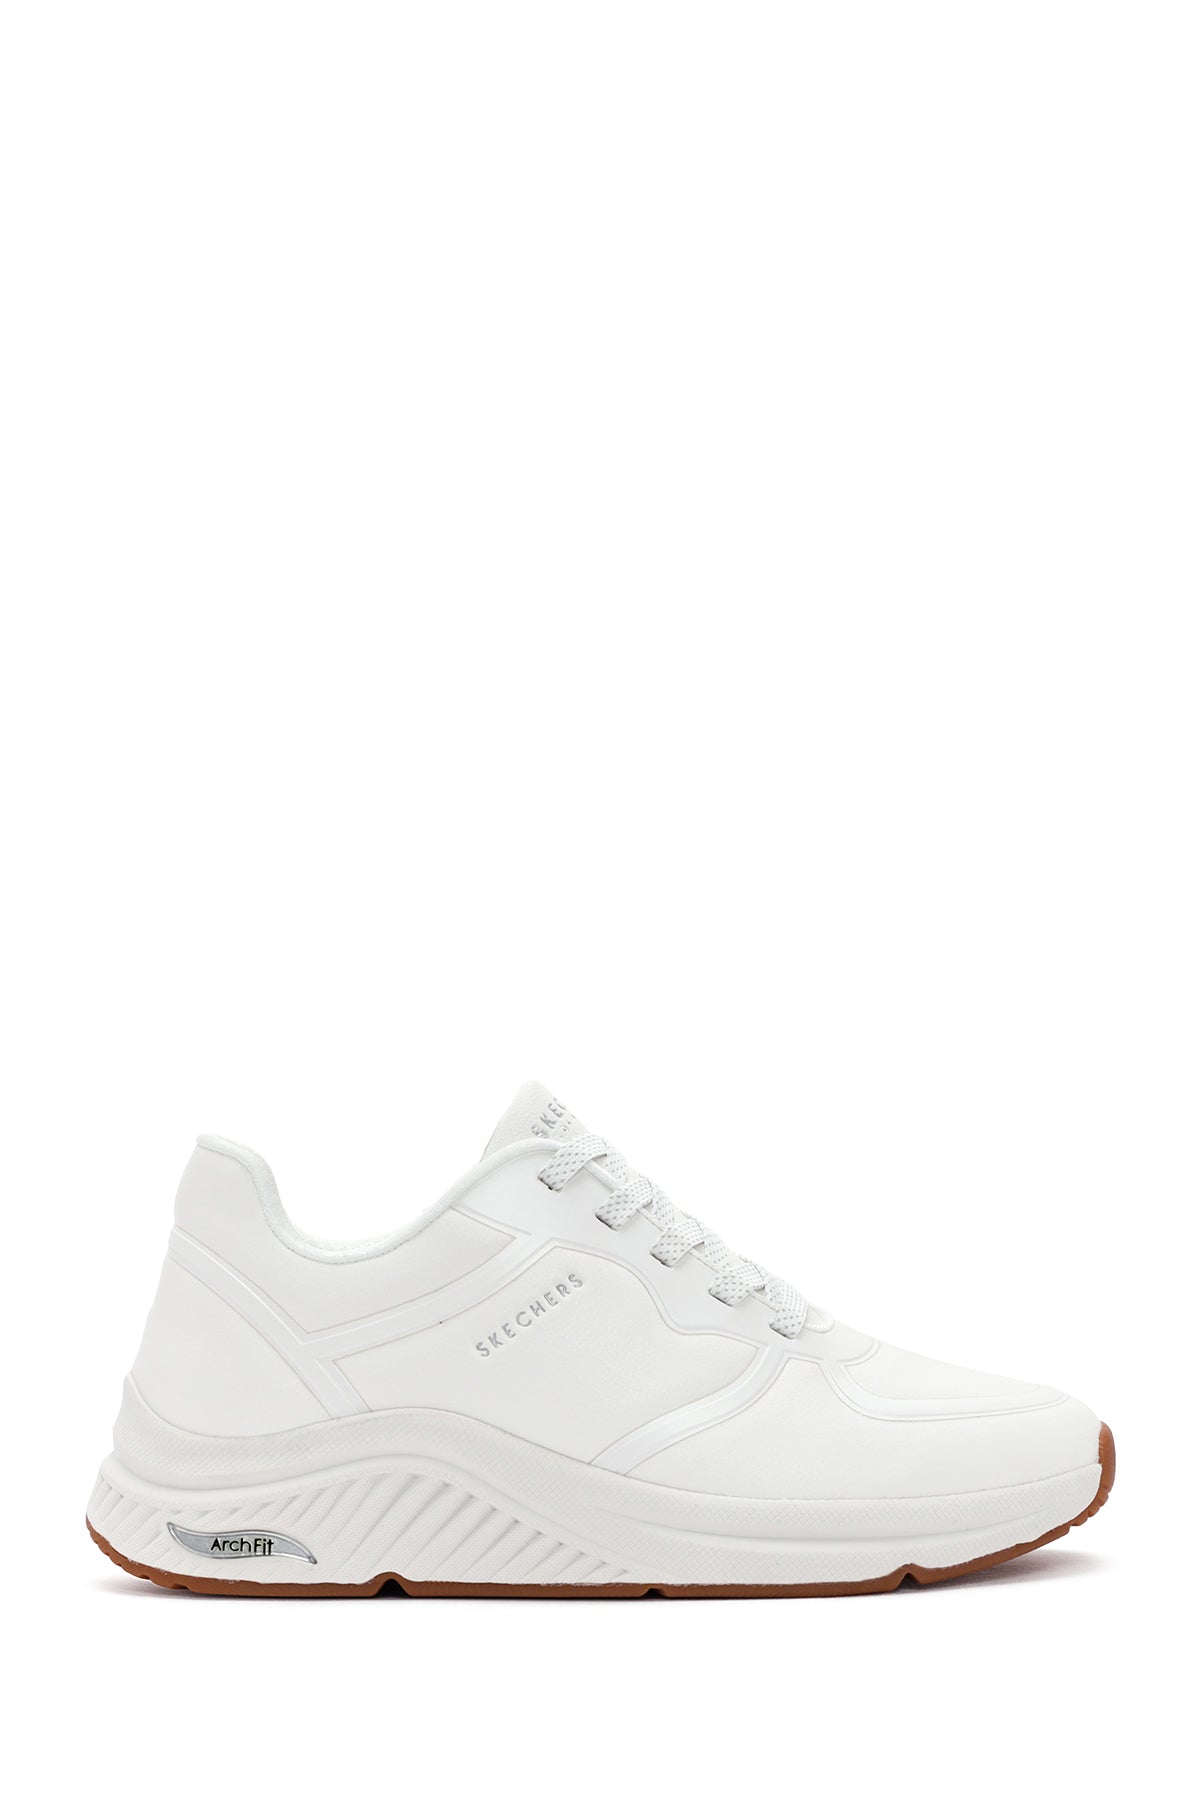 Skechers Kadın Beyaz Arch Fit S-Miles Bağcıklı Sneaker 155570 WHT | Derimod